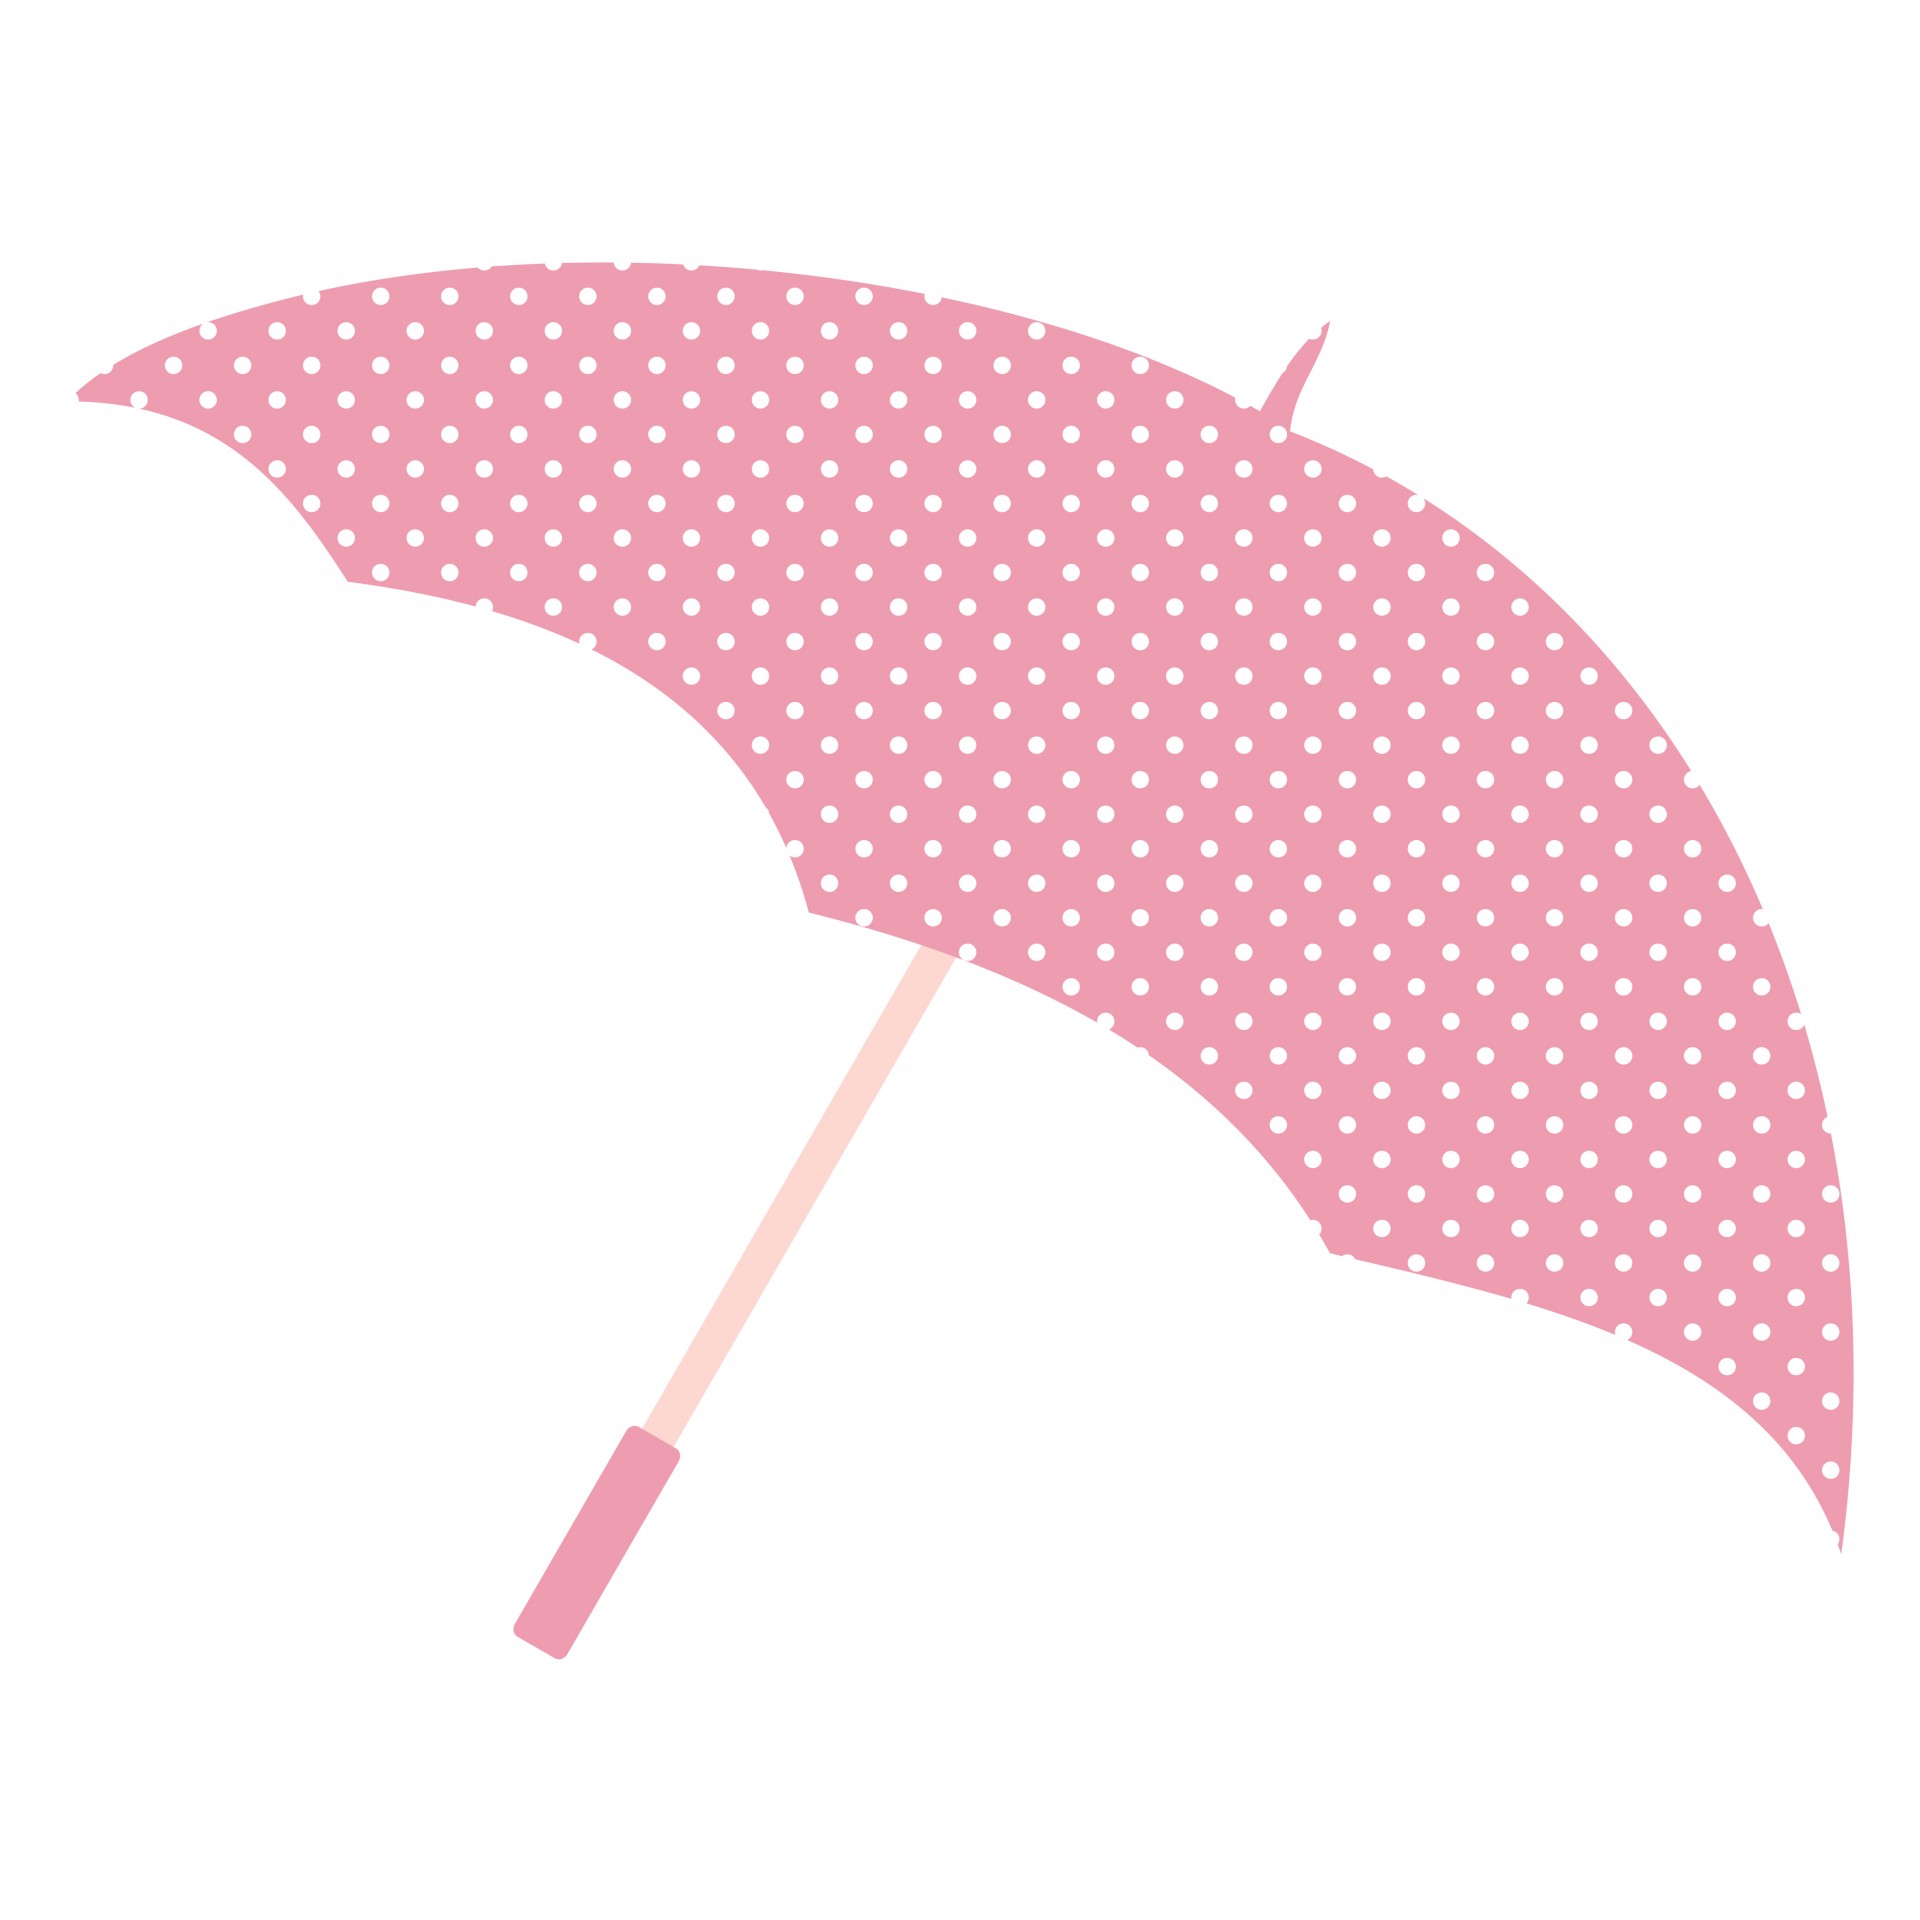 pink umbrella clip art - photo #16